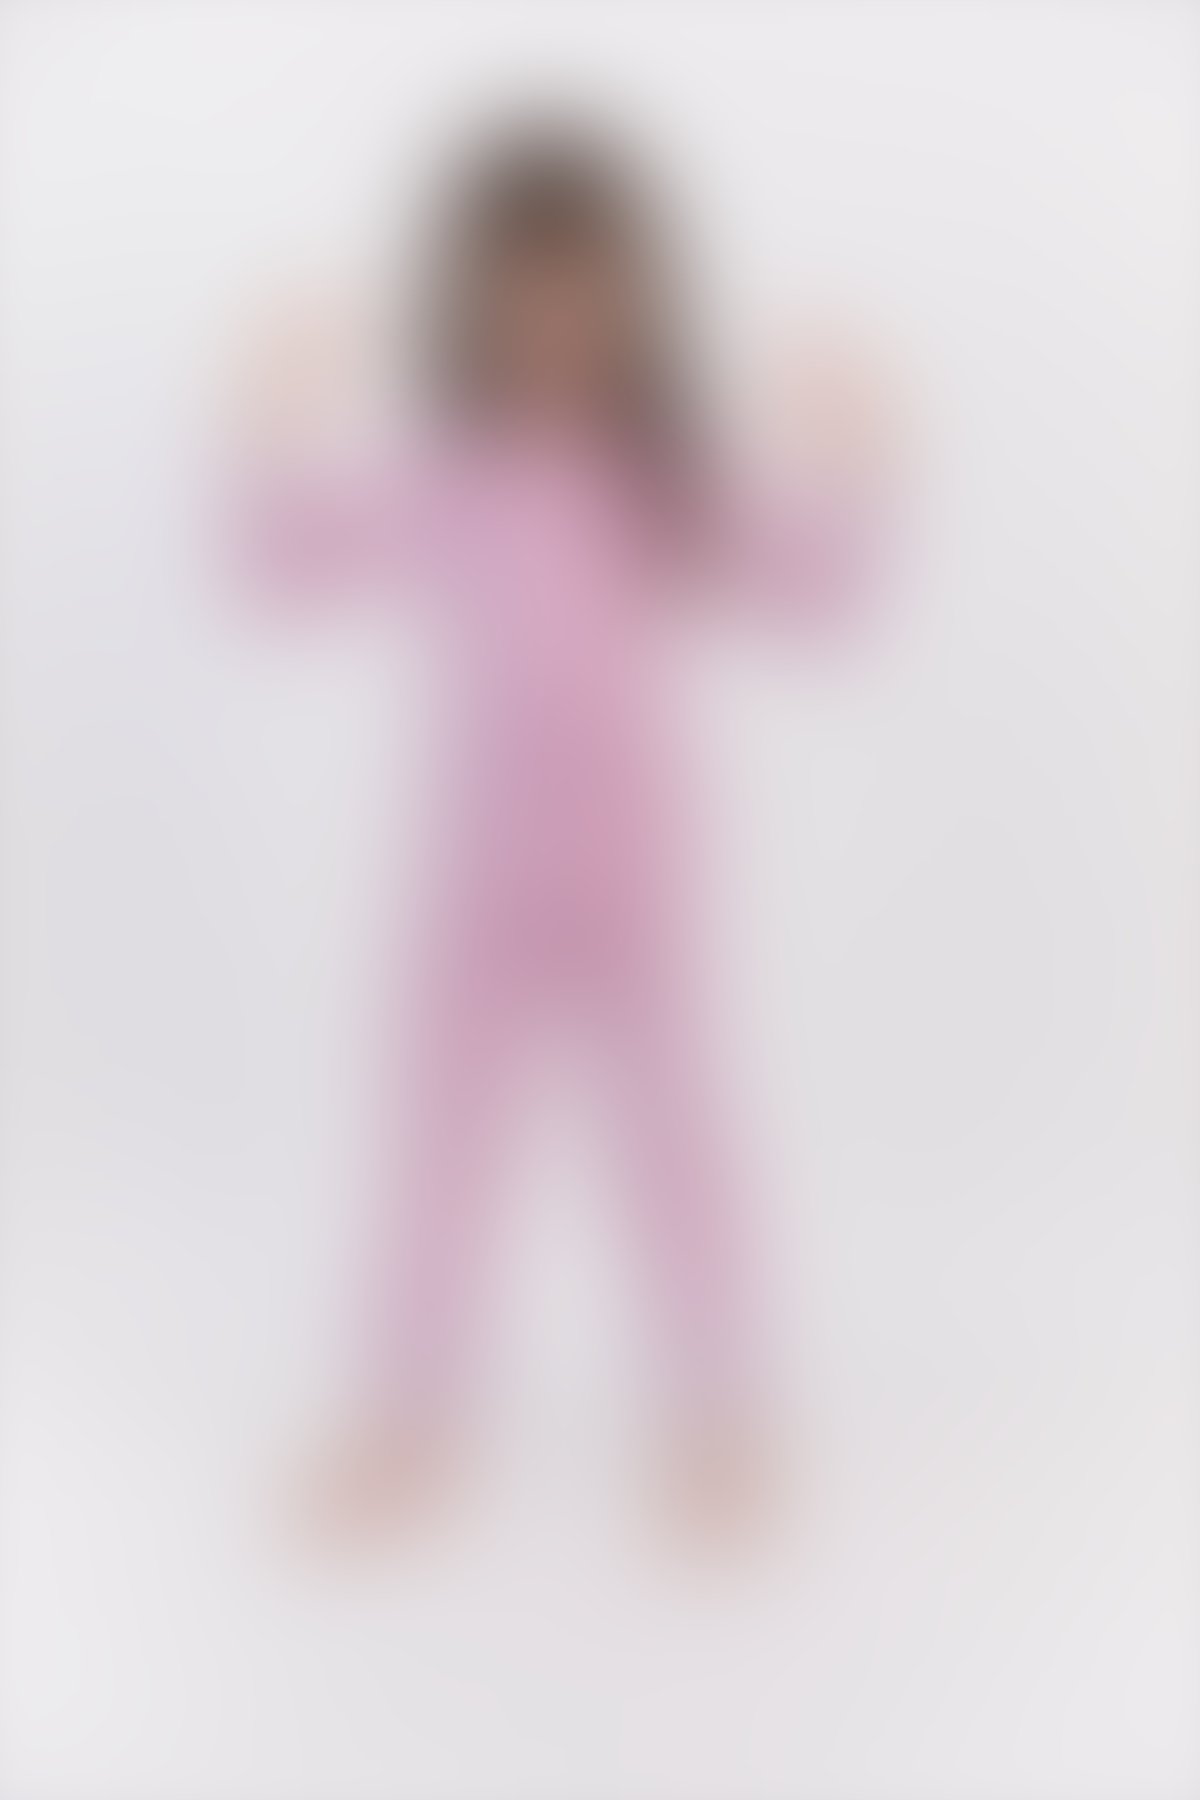 RolyPoly - RolyPoly Açık Gül Kurusu Kız Çocuk Ribanalı Pijama Takımı